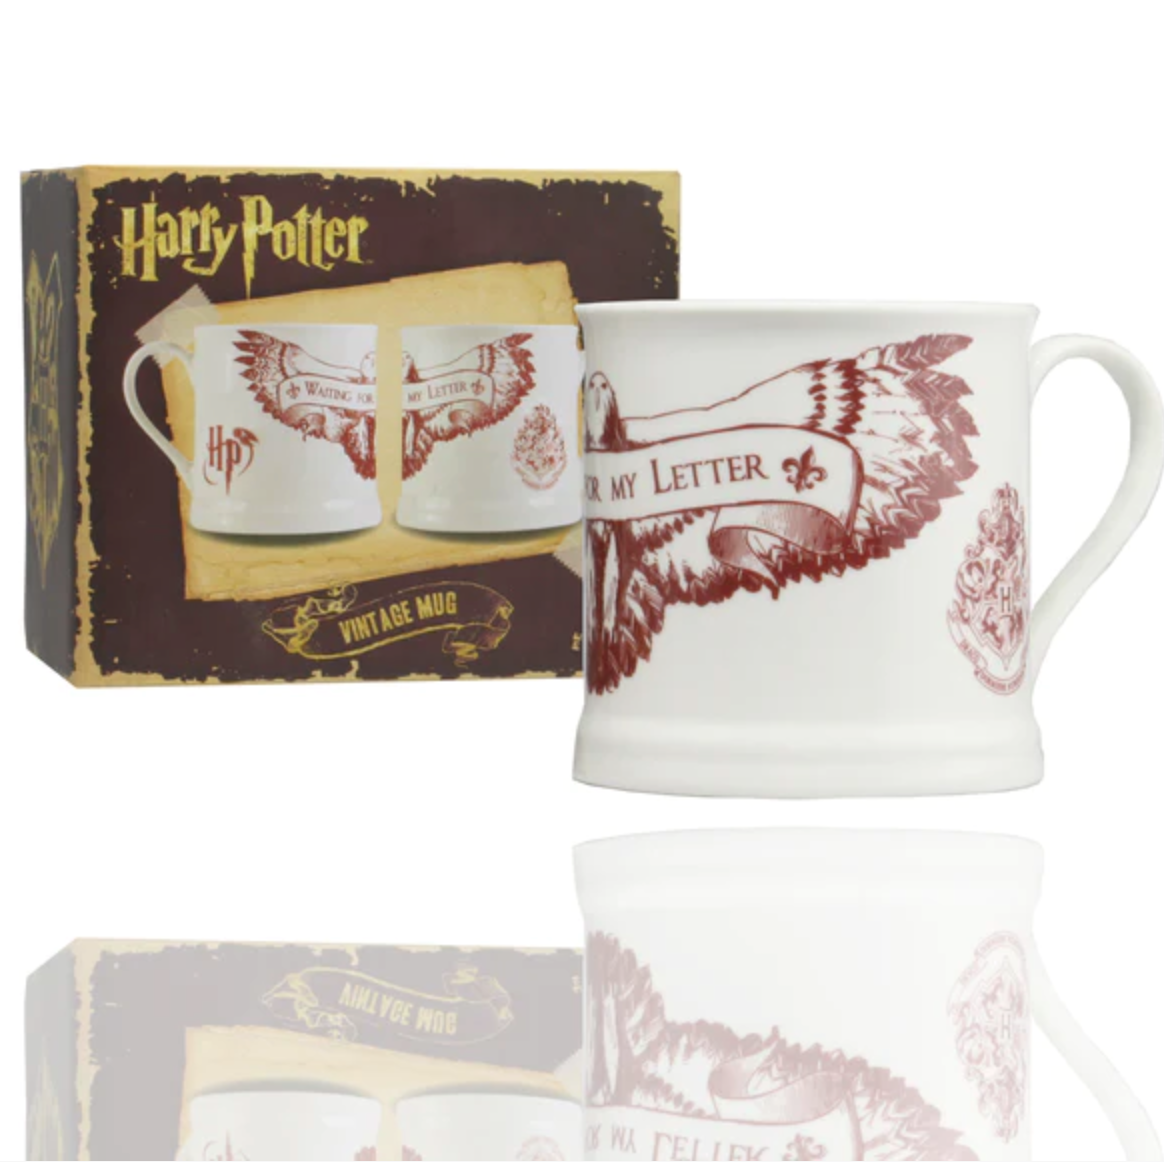 Harry Potter waiting for Hogwarts letter mug